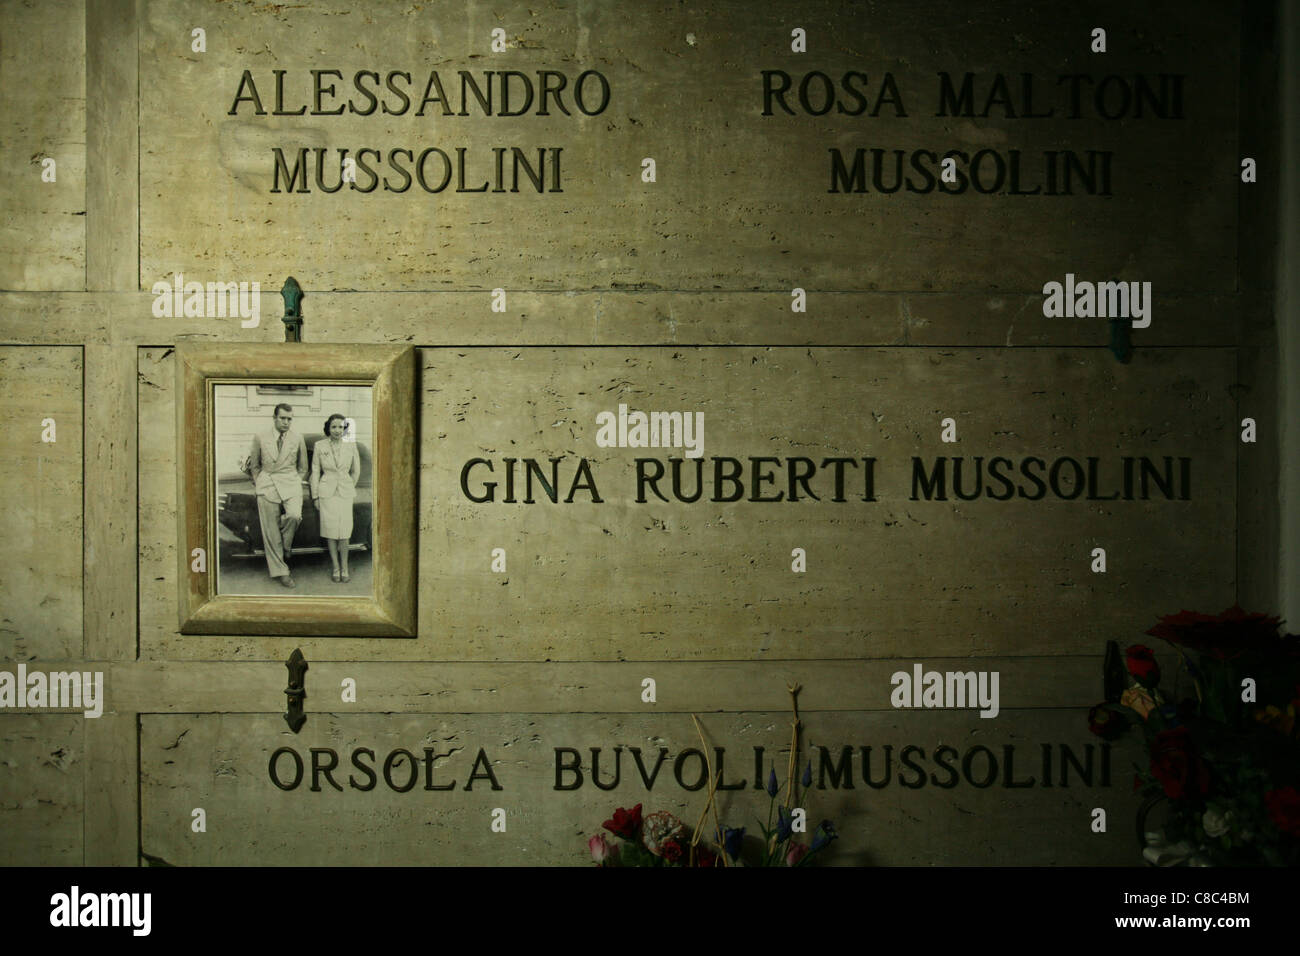 Tomb of Alessandro and Rosa Maltoni Mussolini, the parents of Benito Mussolini, in the family crypt in Predappio, Italy. Stock Photo